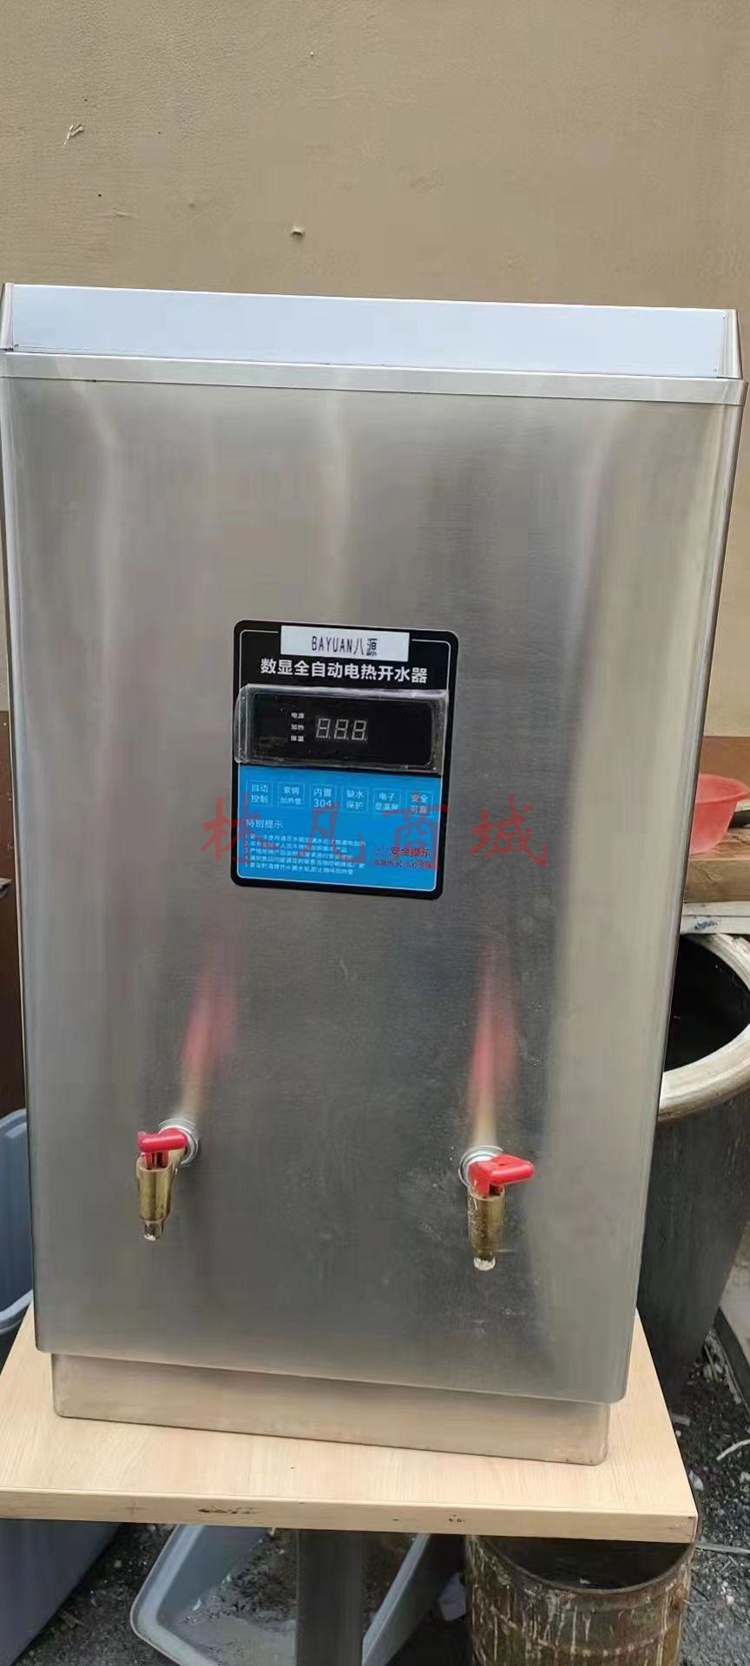  八源开水器商用开水机全自动电热烧水器工厂饮水机大型烧水机220V6000W 40L每小时出水80L